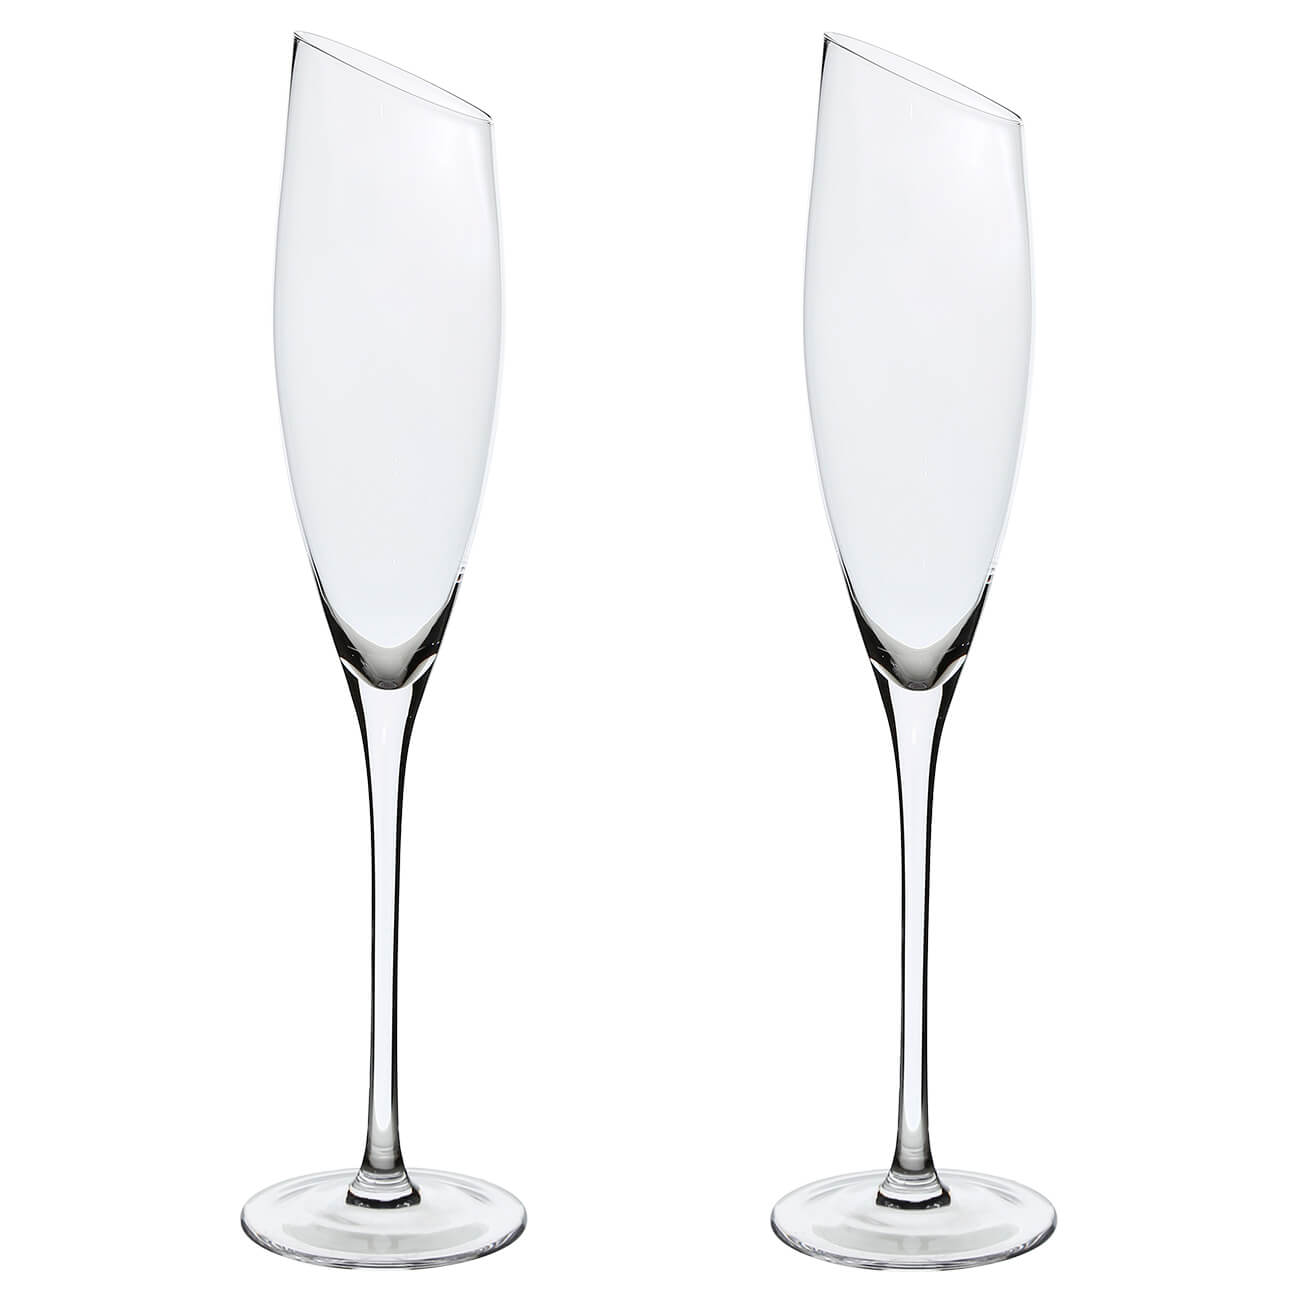 Бокал для шампанского, 180 мл, 2 шт, стекло, Charm L стакан 400 мл 4 шт стекло перламутр charm l polar